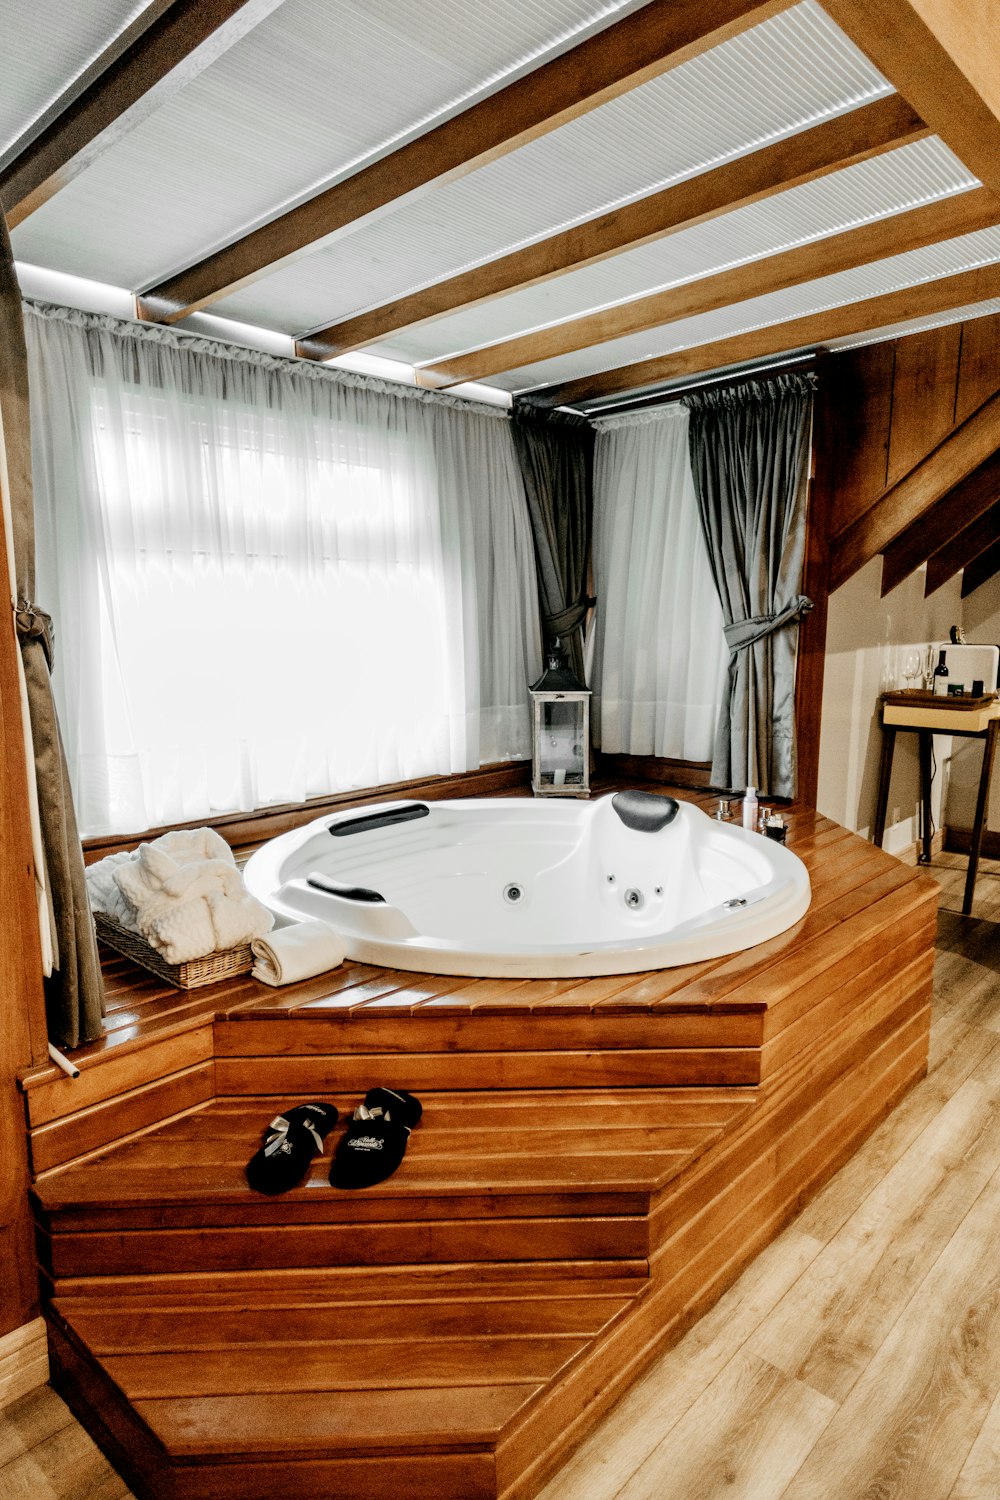 banheira de hidromassagem redonda com jato com estrutura de madeira marrom